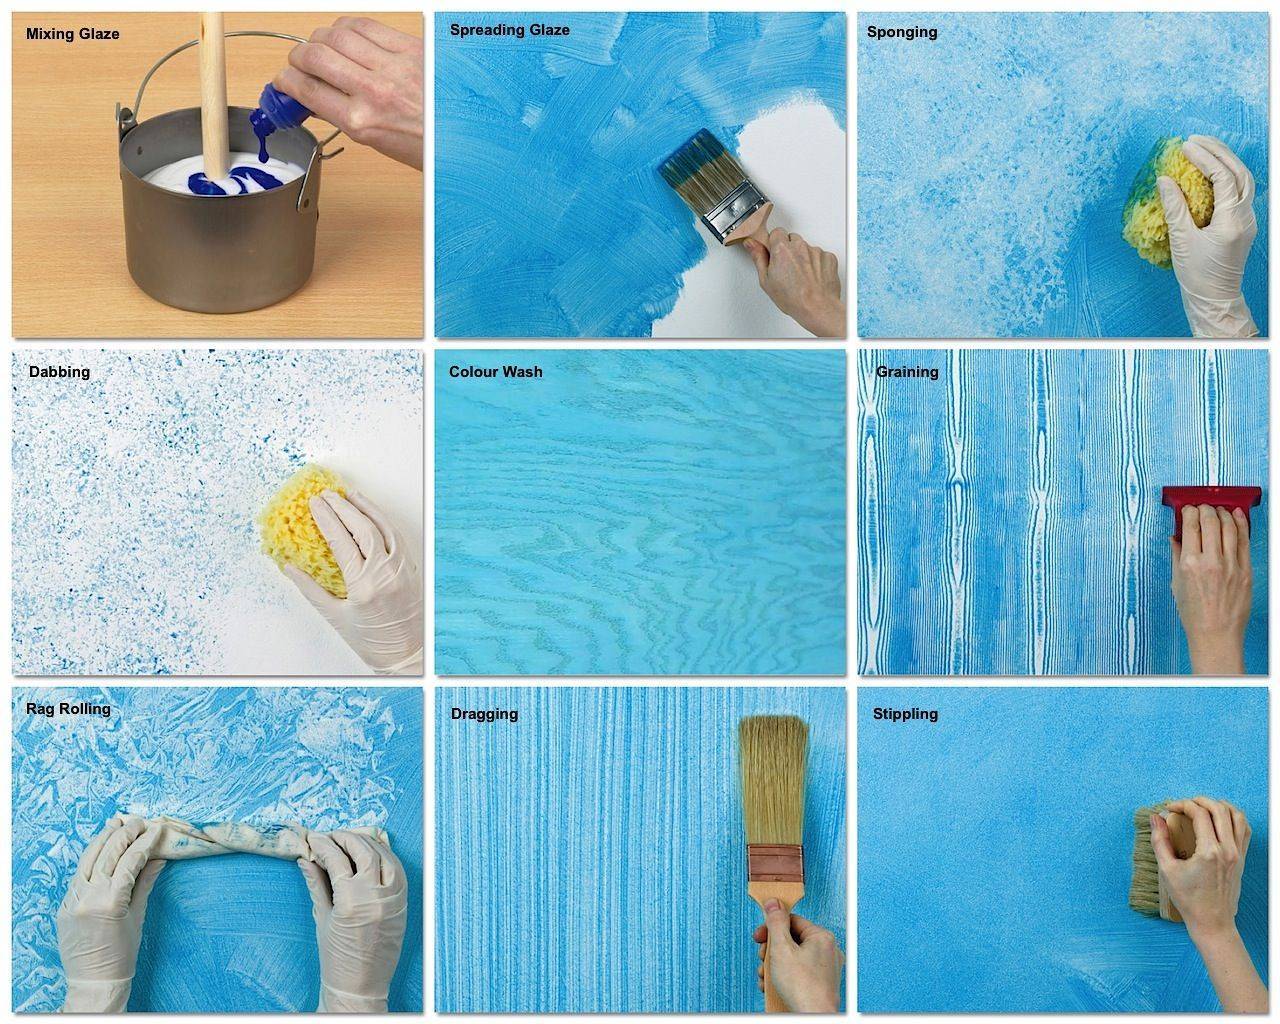 Покраска стен в квартире своими руками: фото, видео инструкция